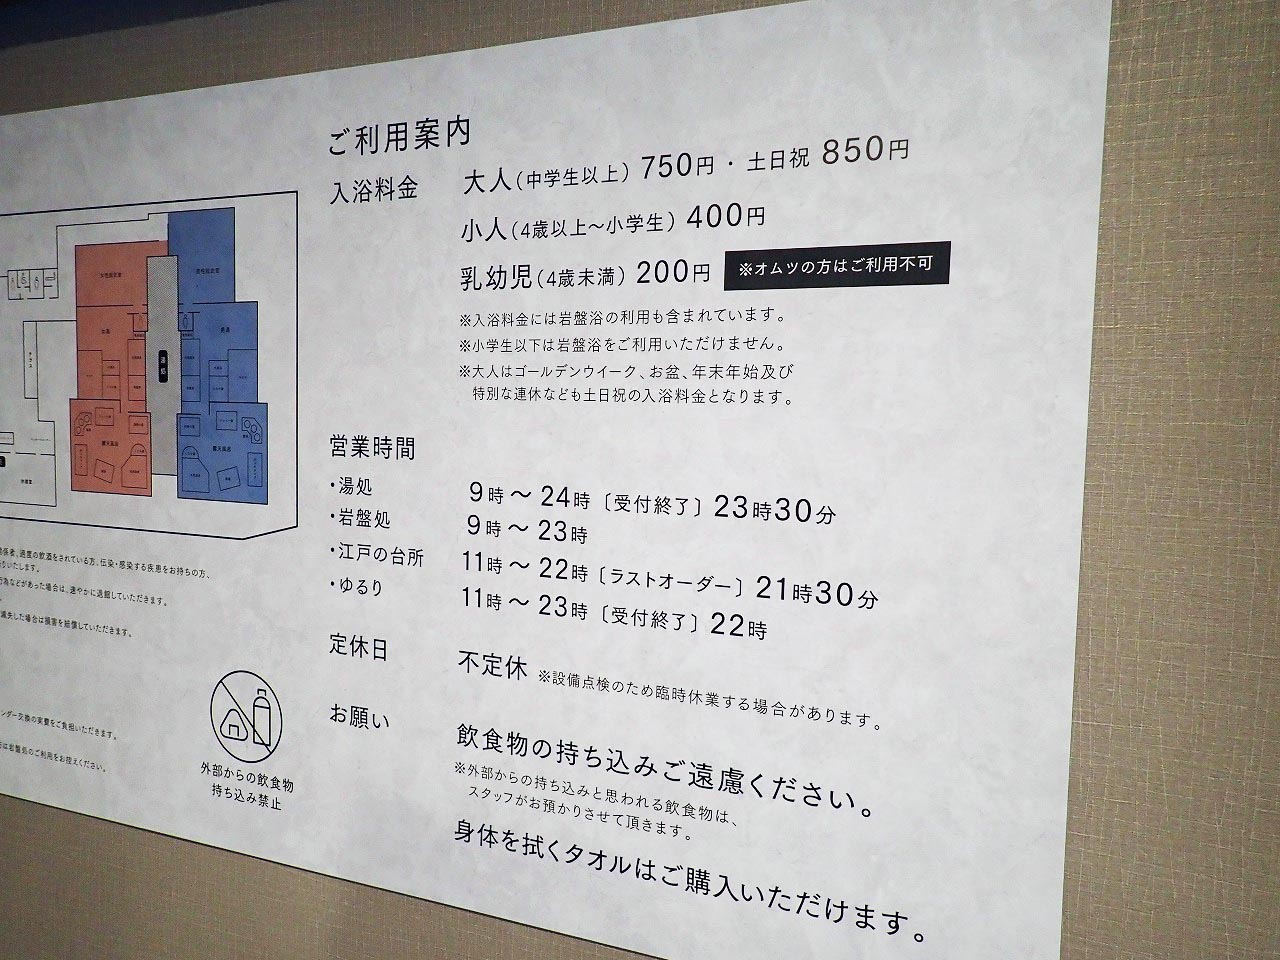 2021年11月にオープンの『小江戸温泉 KASHIBA』